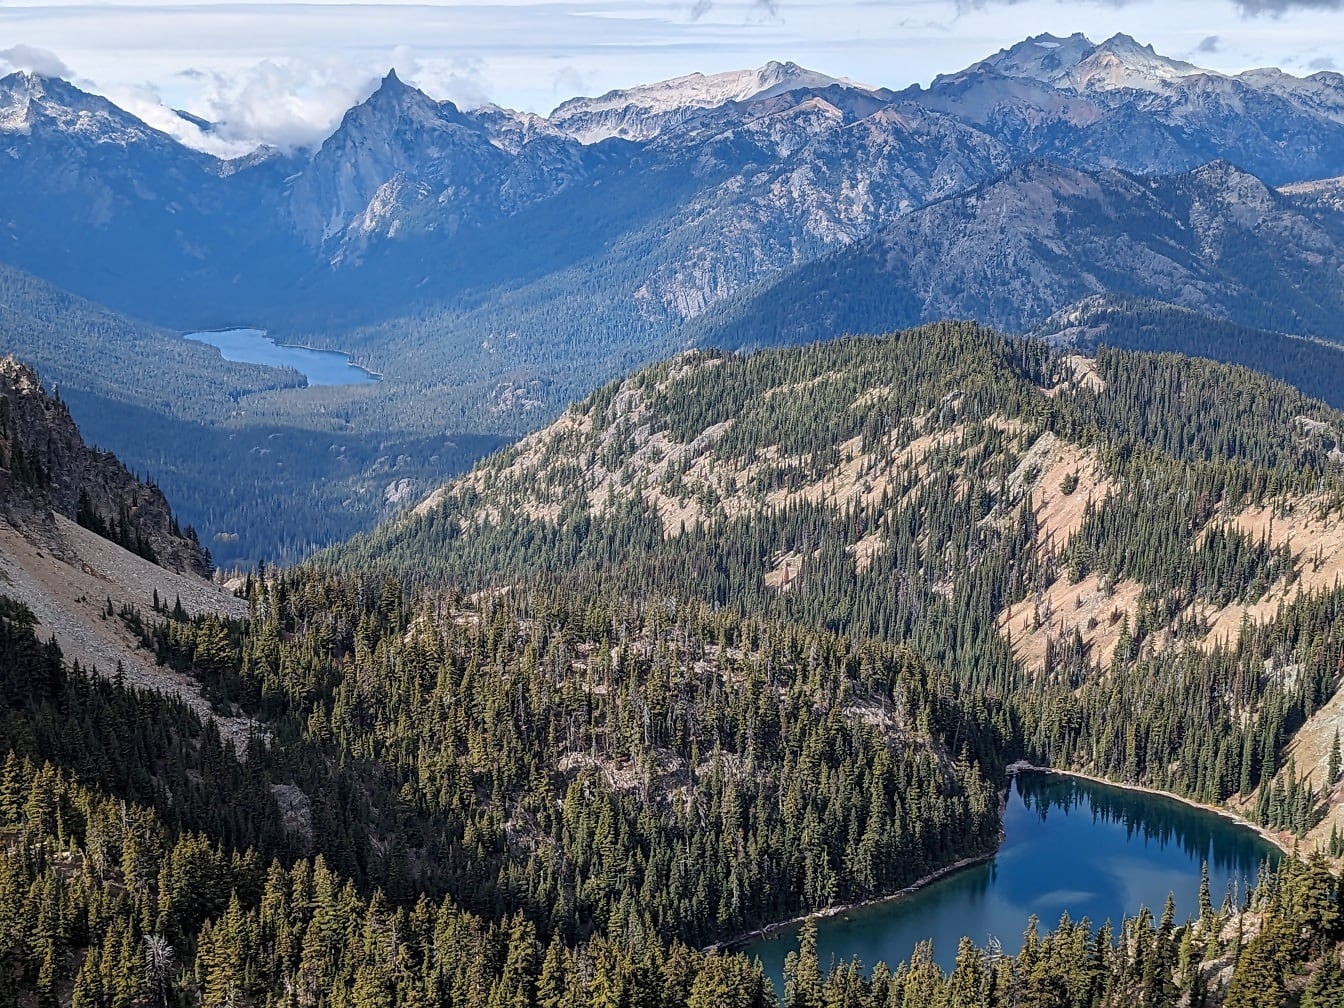 Peisaj panoramic al munților și lacurilor din zonele înalte